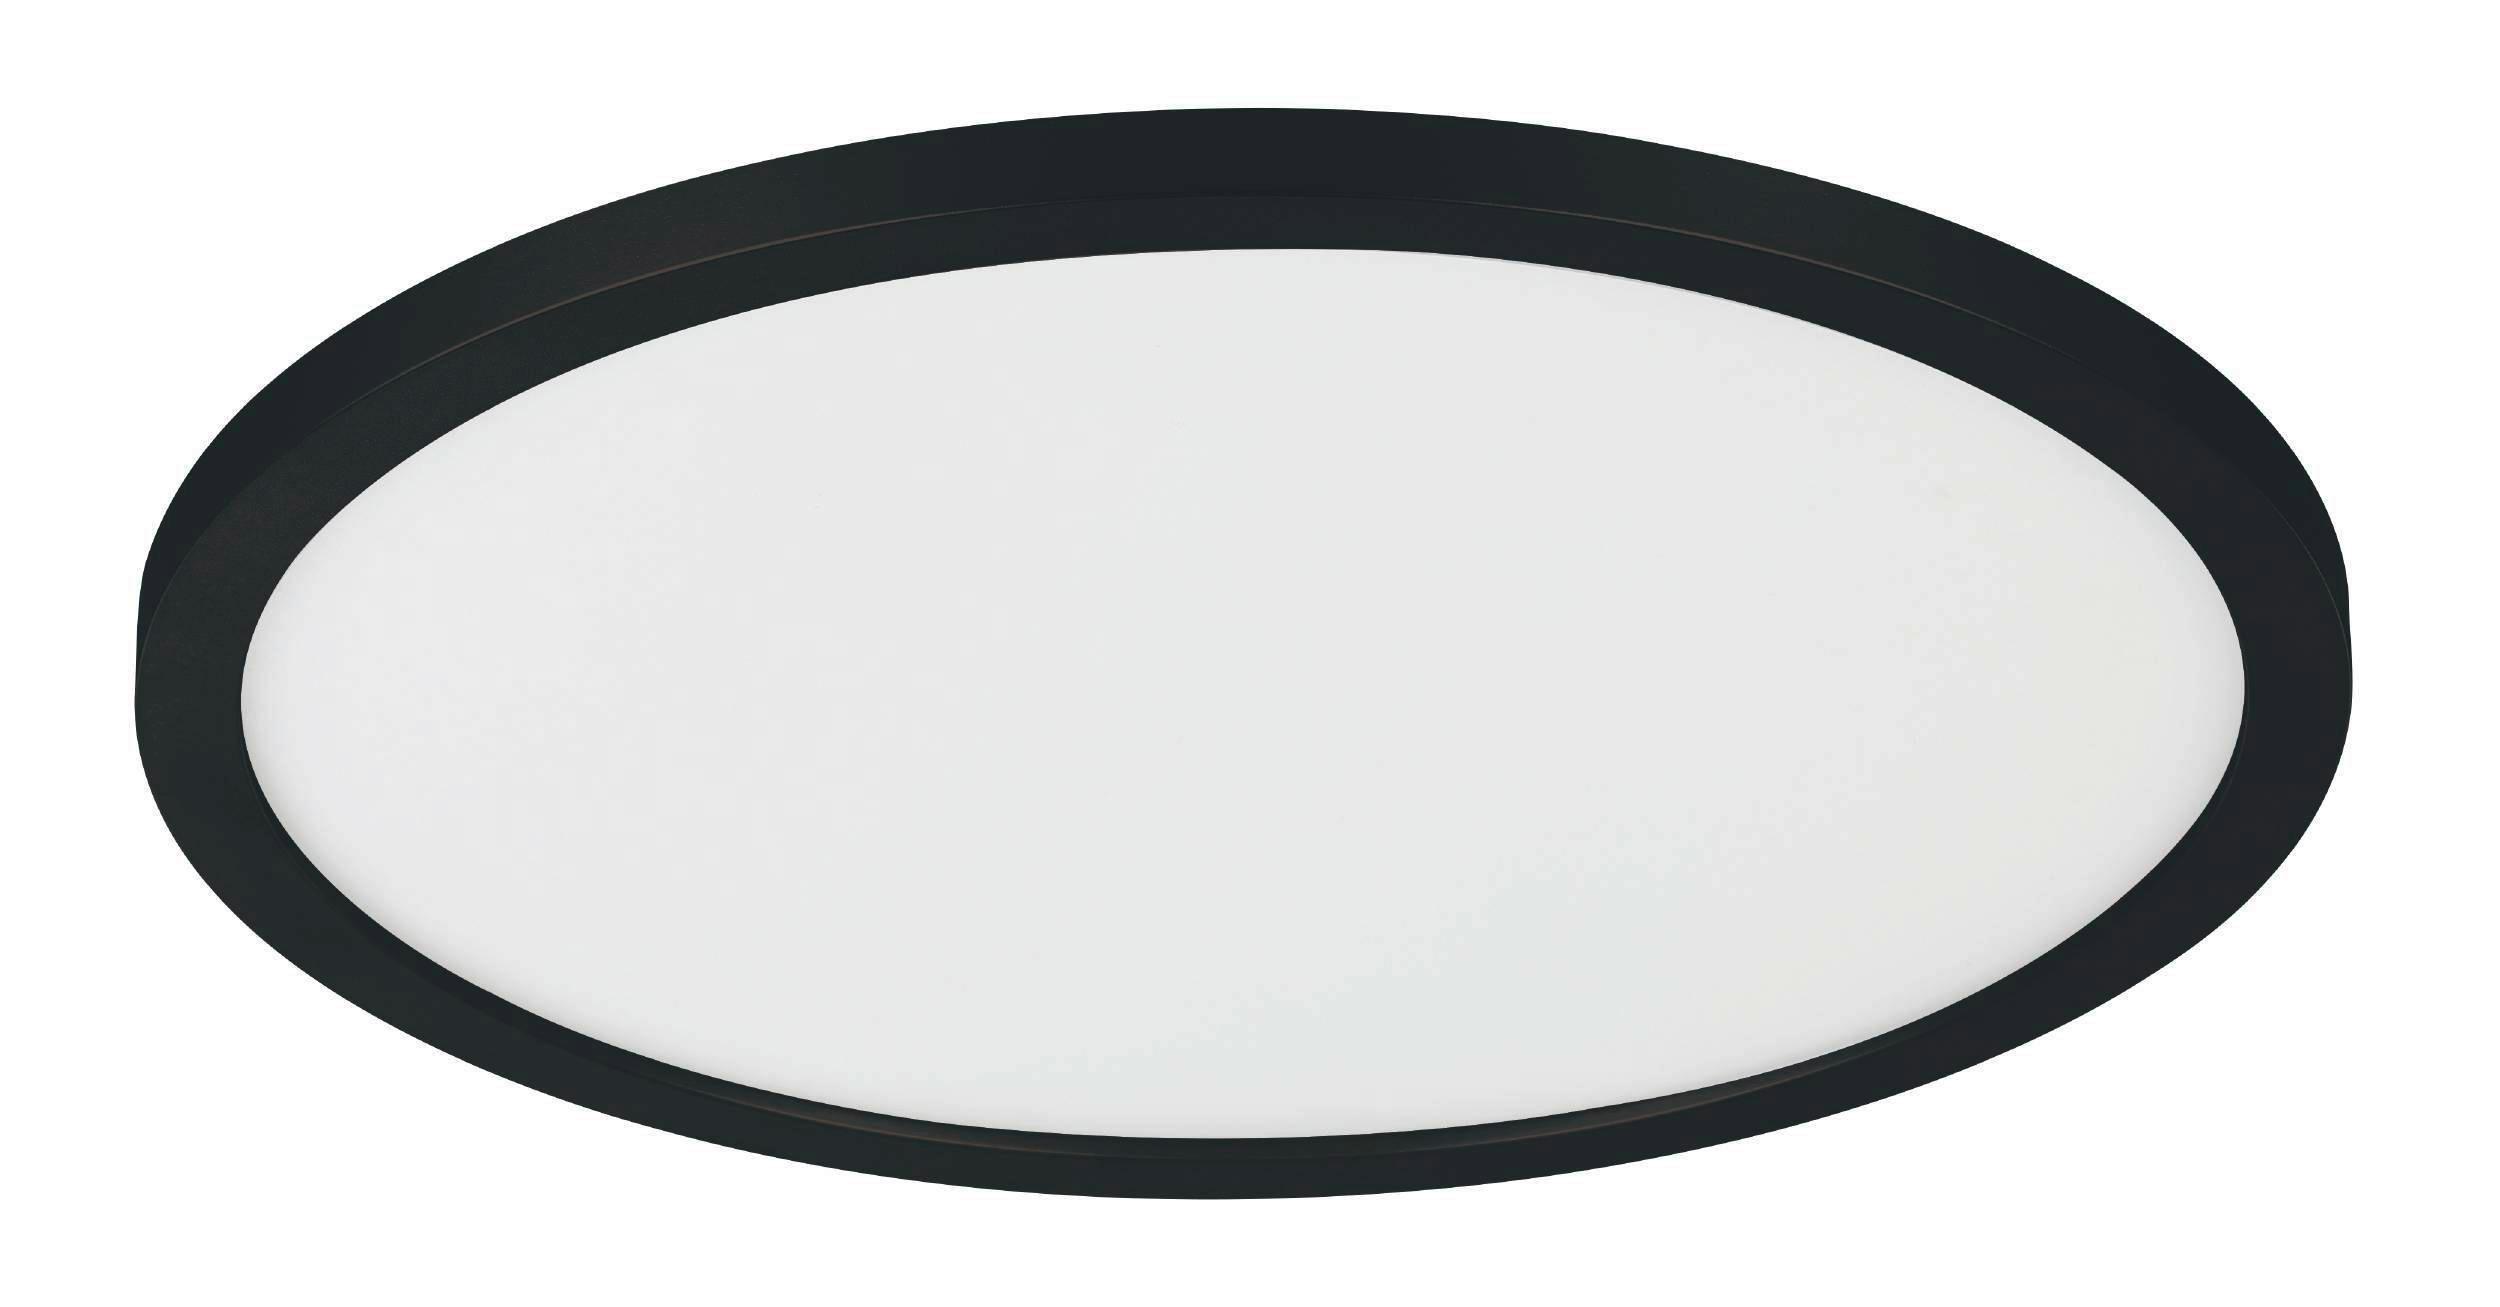 LED-Deckenleuchte Campaspero Ø 29,5 cm mit Fernbedienung - Schwarz/Weiß, Basics, Kunststoff (30/3cm) - Eglo